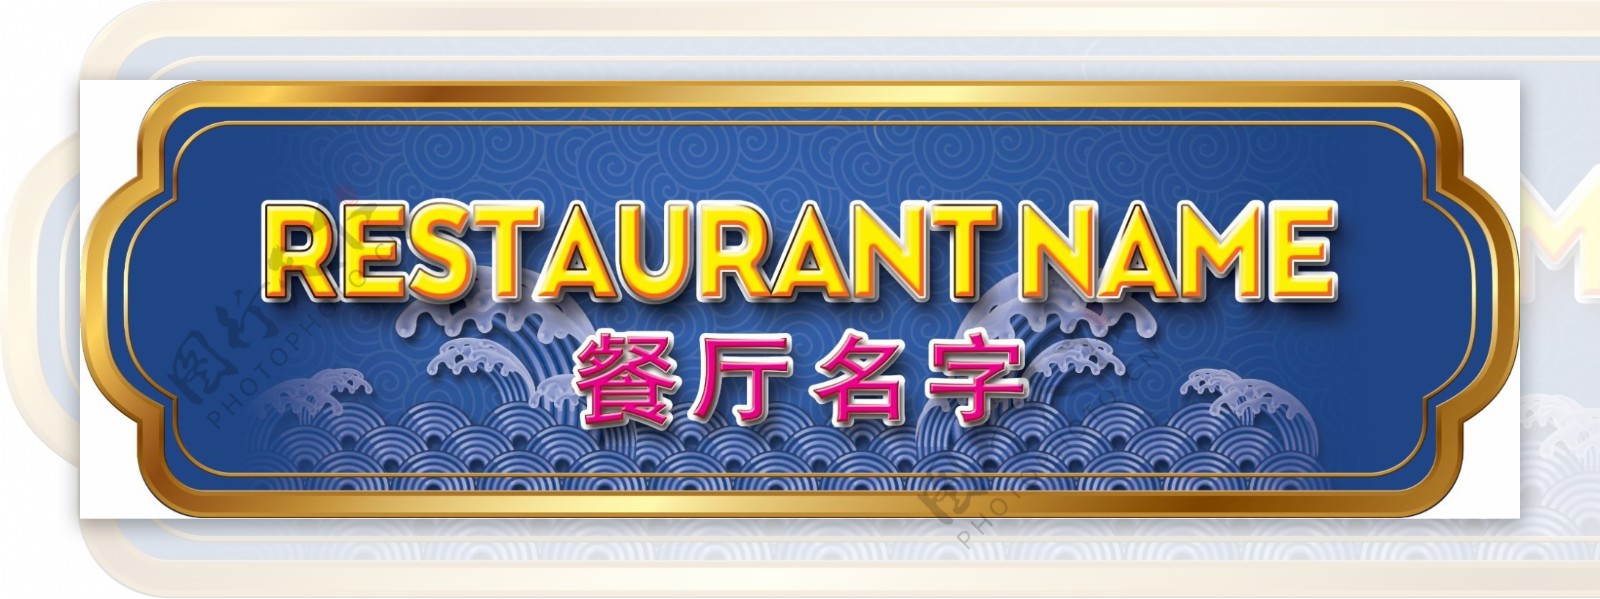 中式风格饮食餐厅招牌设计3